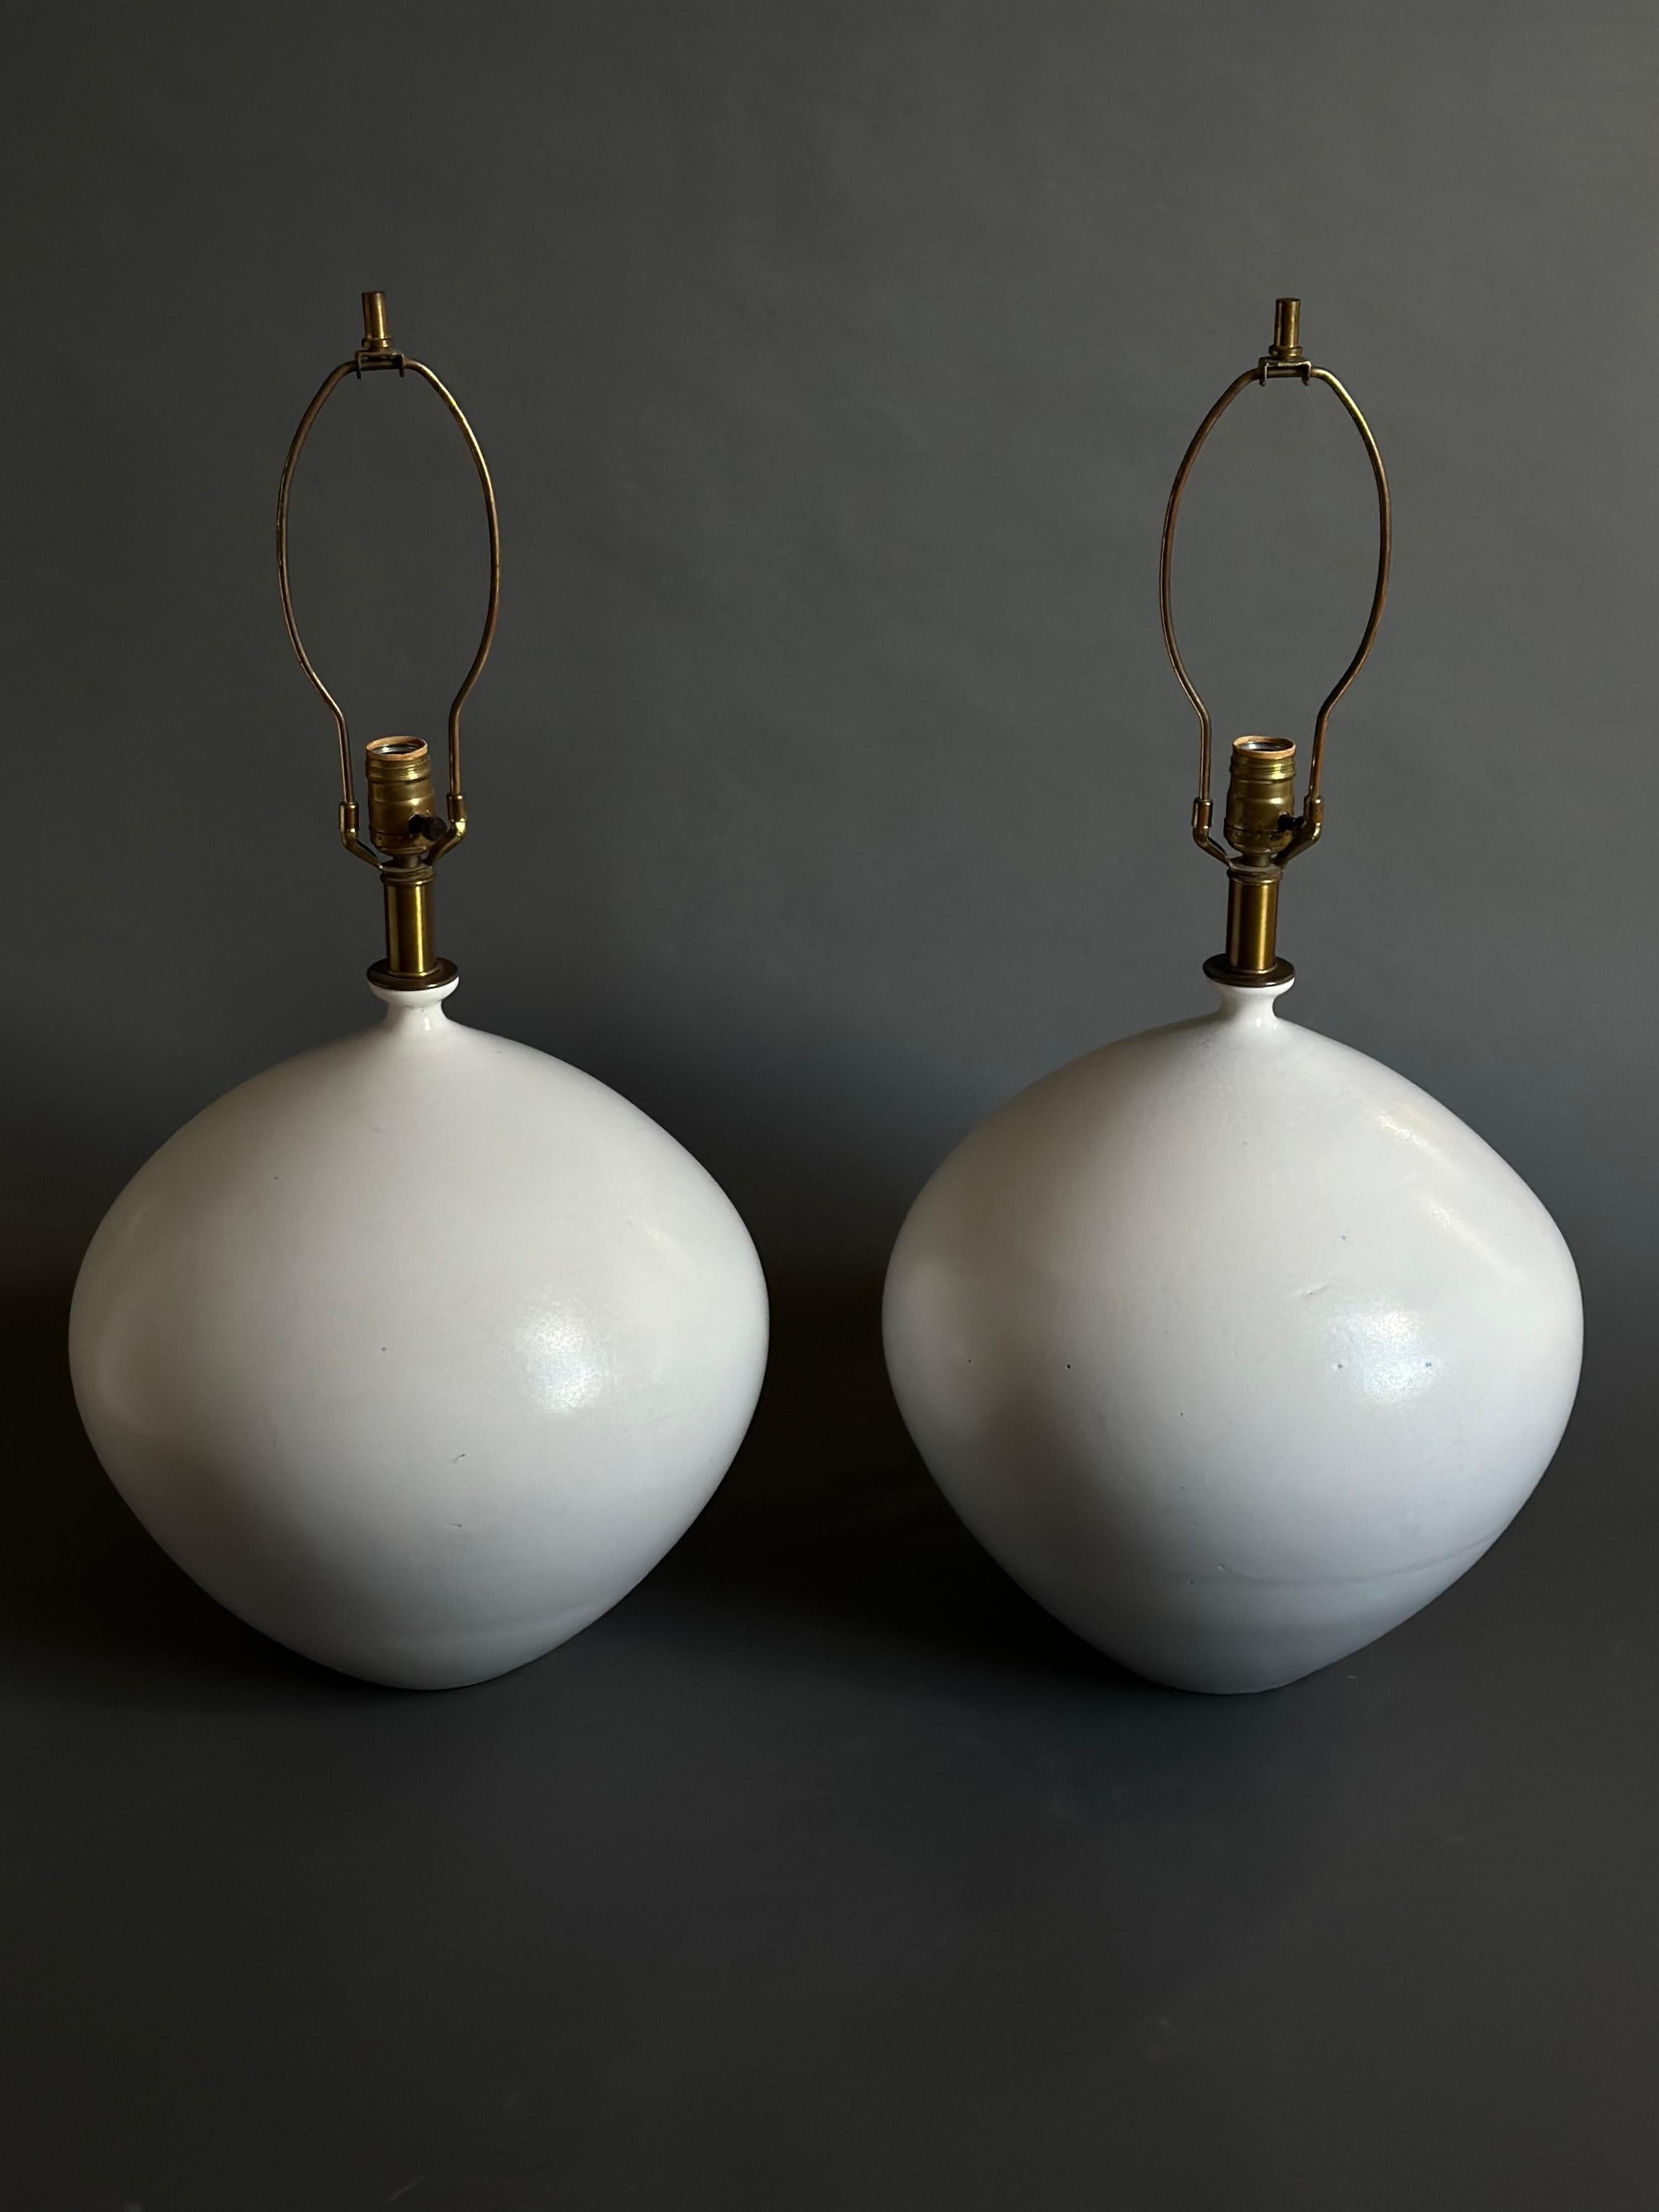 Ein Paar handgedrehte Keramik-Tischlampen in runder Form aus der Serie 3300, Modell 3301, entworfen von Lee Rosen für Design Technics, mit einer matten, milchweißen Glasur. Ein robustes Design mit einem Gewicht von 25 Pfund pro Lampe. Beide sind mit